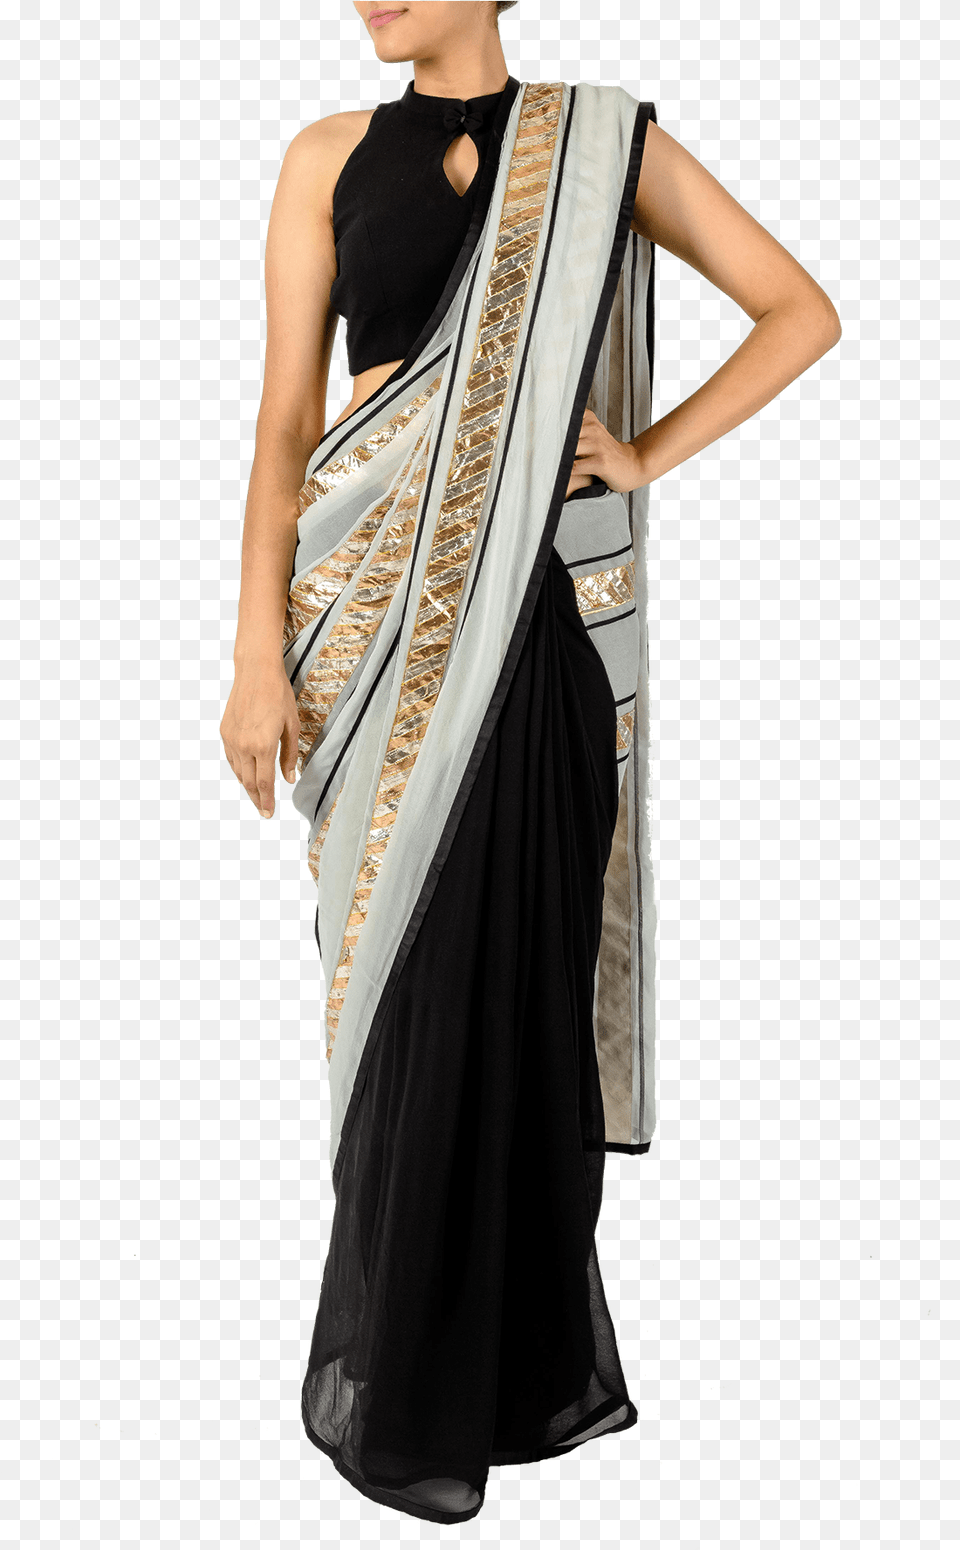 Black And Gold Saree Blouse Silk, Clothing, Sari, Adult, Bride Free Transparent Png